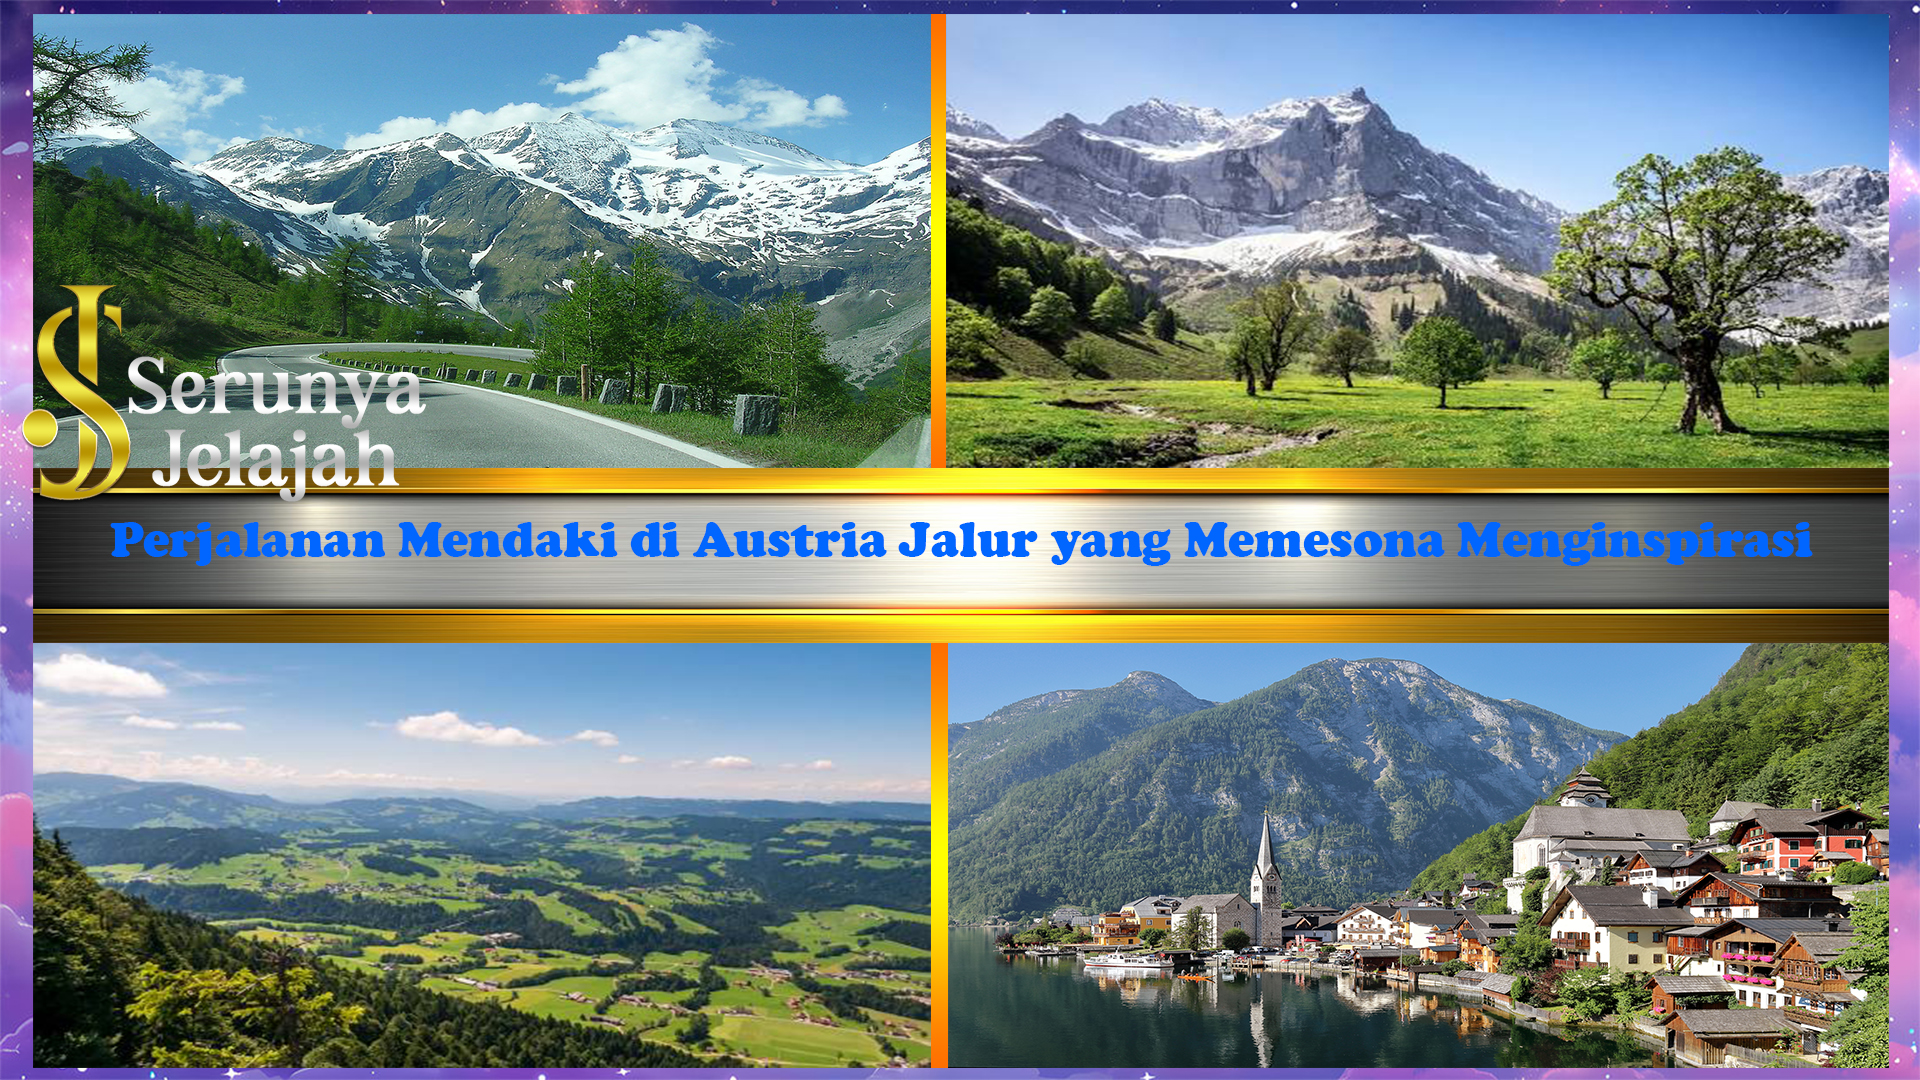 Perjalanan Mendaki di Austria Jalur yang Memesona Menginspirasi